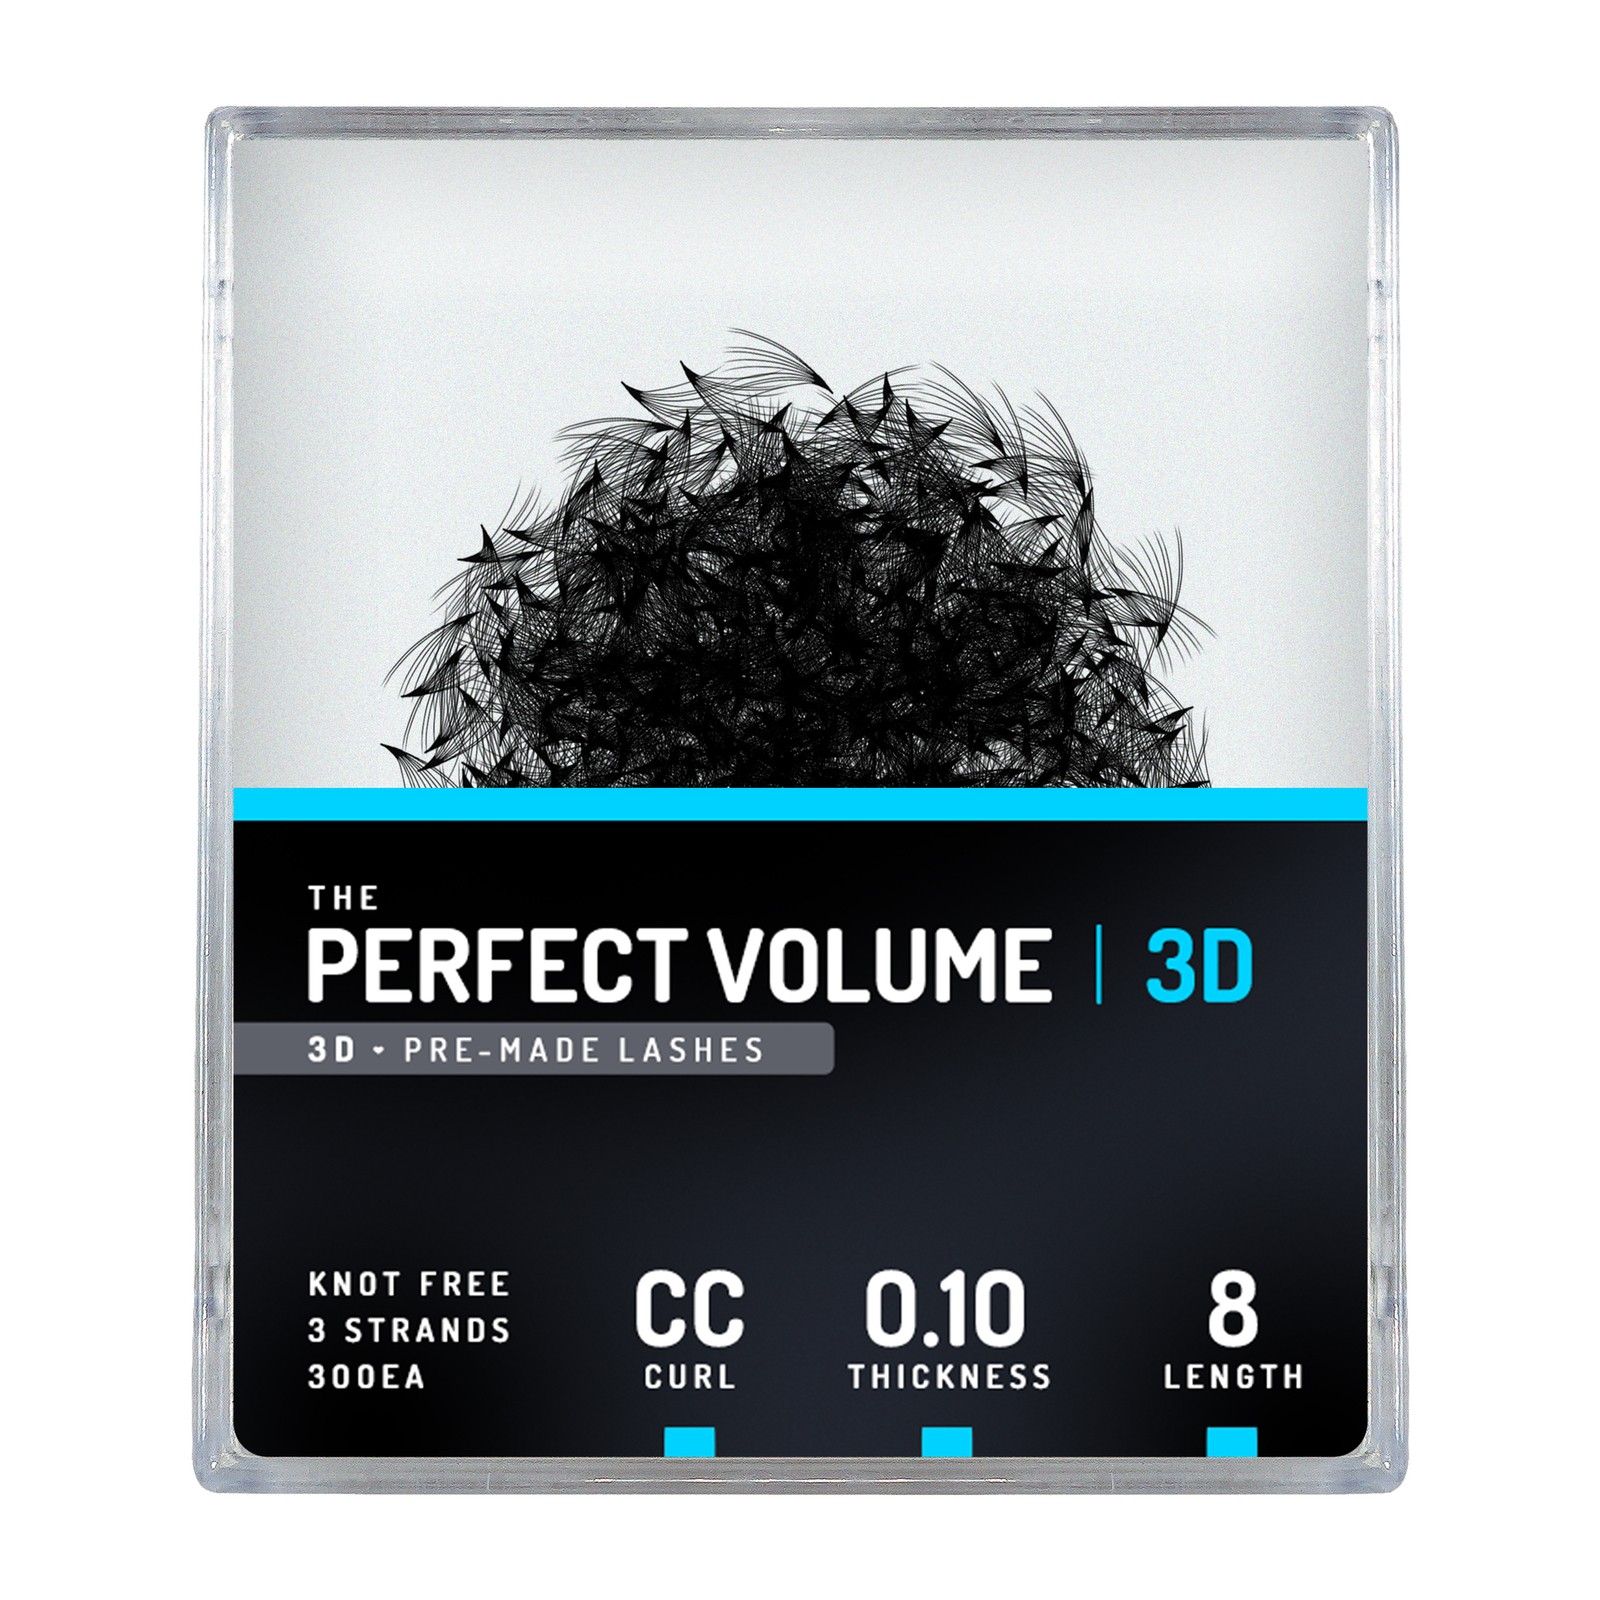 Volume parfait -  300 buchesele premade 3D -  8mm, CC, 0.10mm